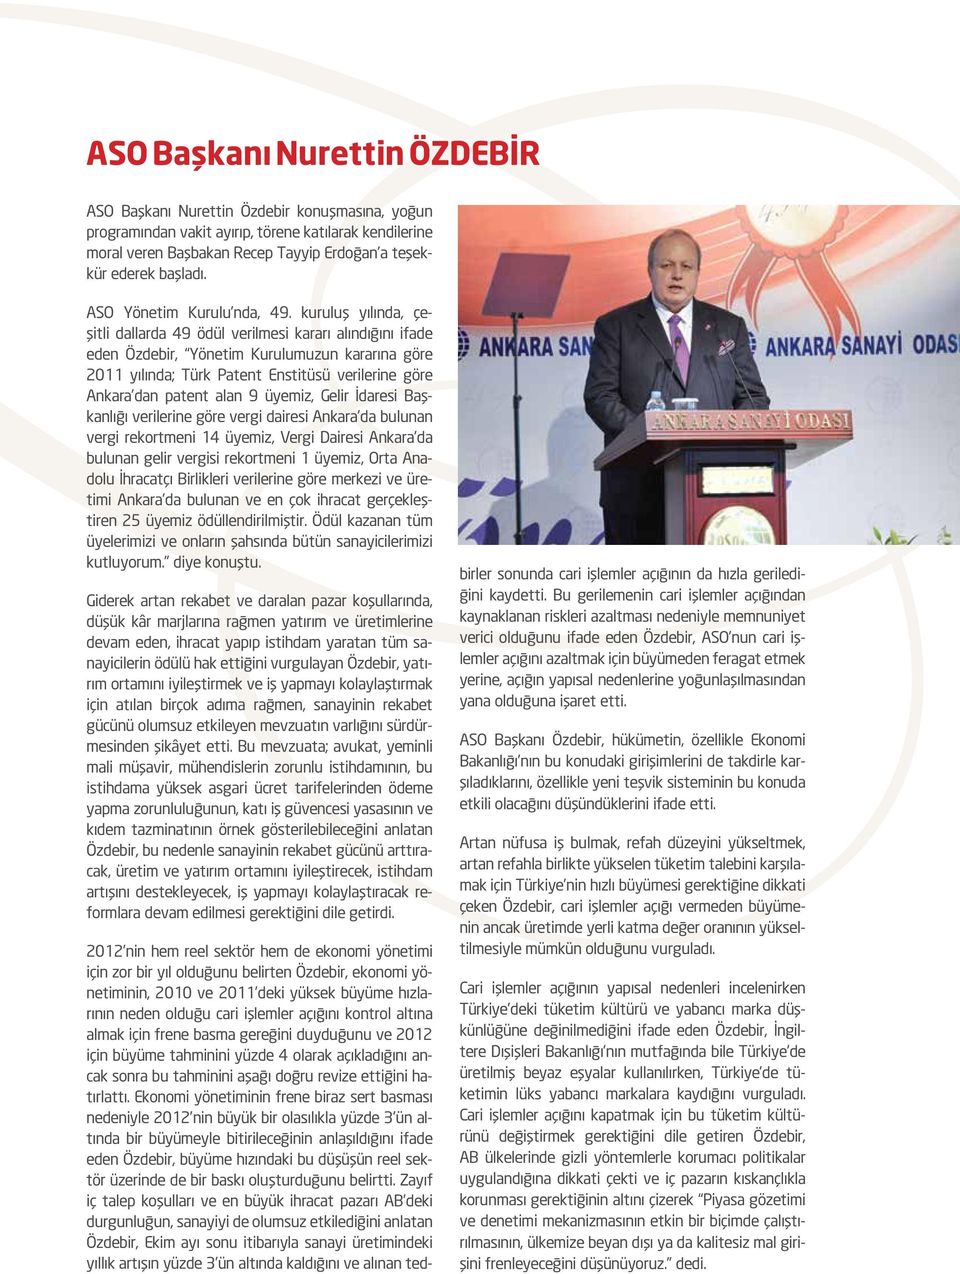 kuruluş yılında, çeşitli dallarda 49 ödül verilmesi kararı alındığını ifade eden Özdebir, Yönetim Kurulumuzun kararına göre 2011 yılında; Türk Patent Enstitüsü verilerine göre Ankara dan patent alan